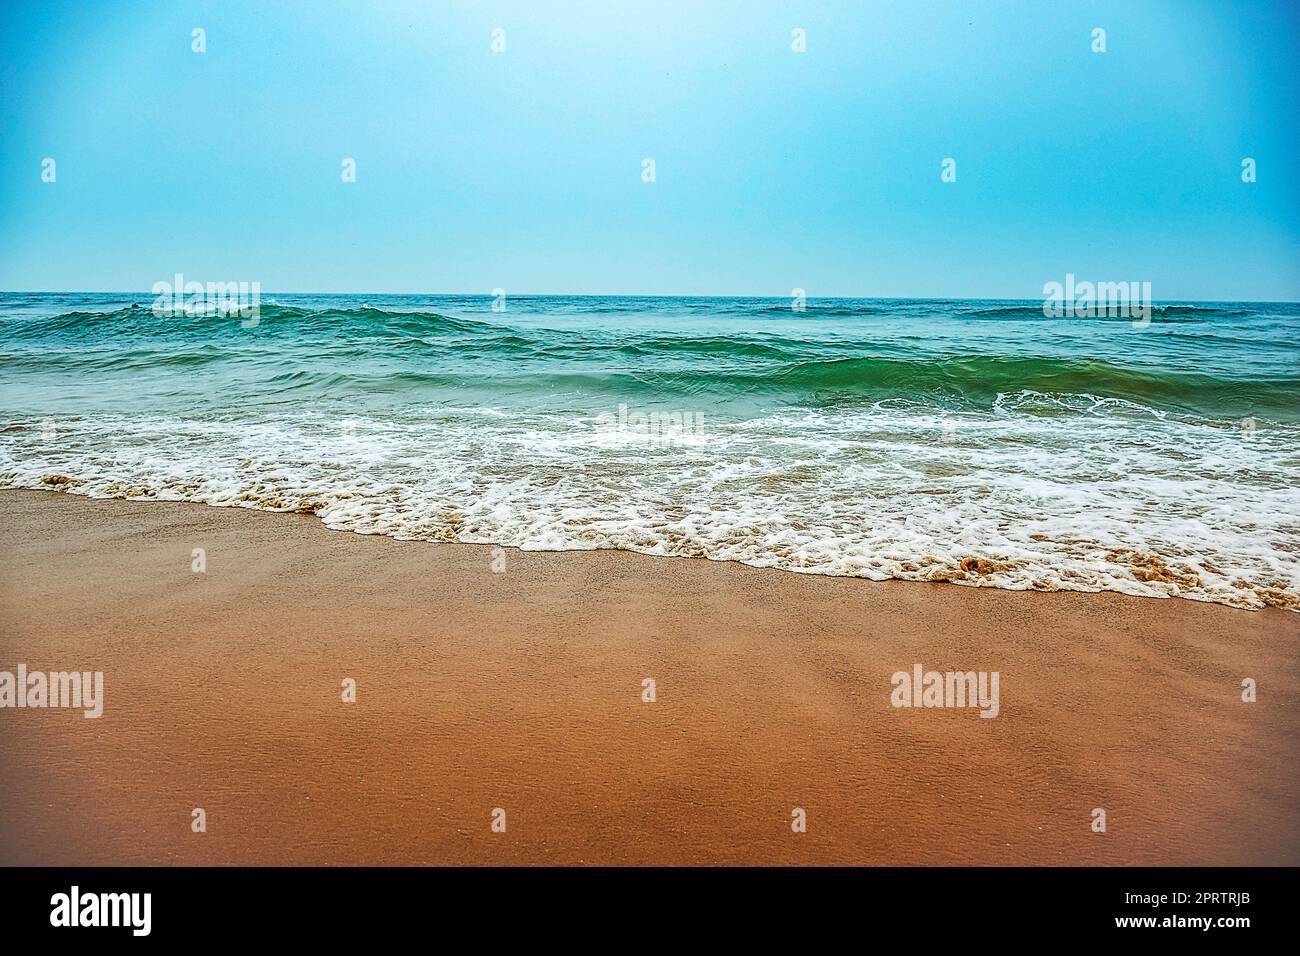 Le onde del mare dell'East Cost dell'India sono spettacolari alla spiaggia di Puri di Odisha, dove alcune persone si godono il bagno di mare con gli amici lontano dalla riva. India, febbraio 2020. Foto Stock